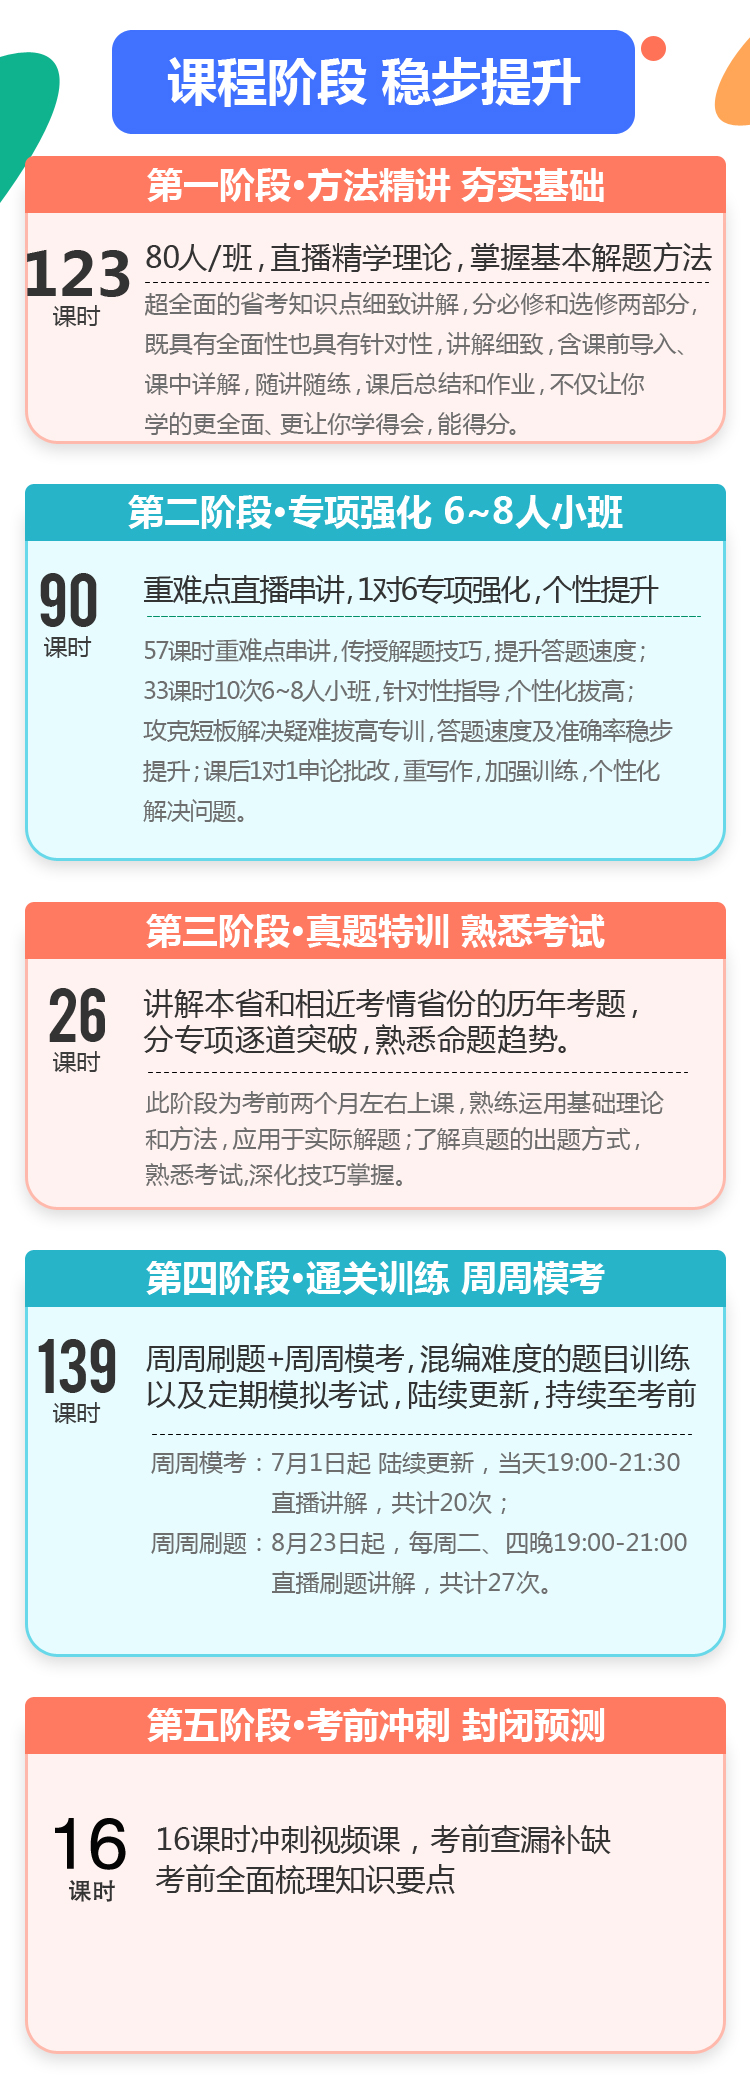 2019上海市考笔面线上小班直播笔面特训协议